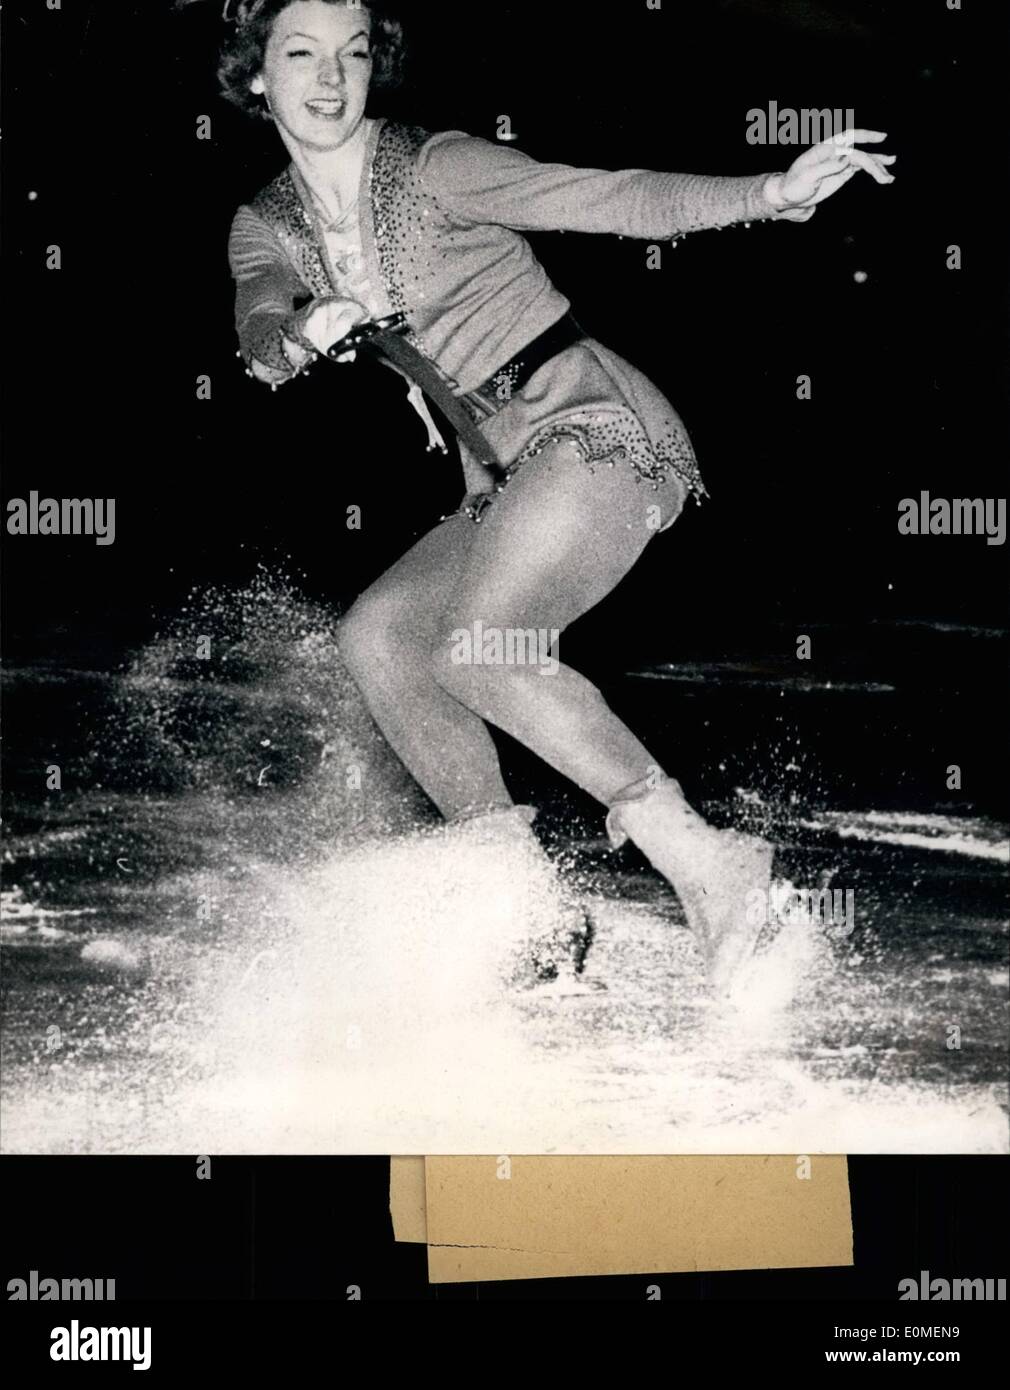 Febbraio 02, 1955 - Tenley Albright campione del mondo di pattinaggio di figura: ex-campione del mondo Tenley Albright, battuto lo scorso anno da Gundi Busch, acquisito il tanto desiderato titolo ancora una volta questo anno a Vienna. La foto mostra la American Tenley Albright. Foto Stock